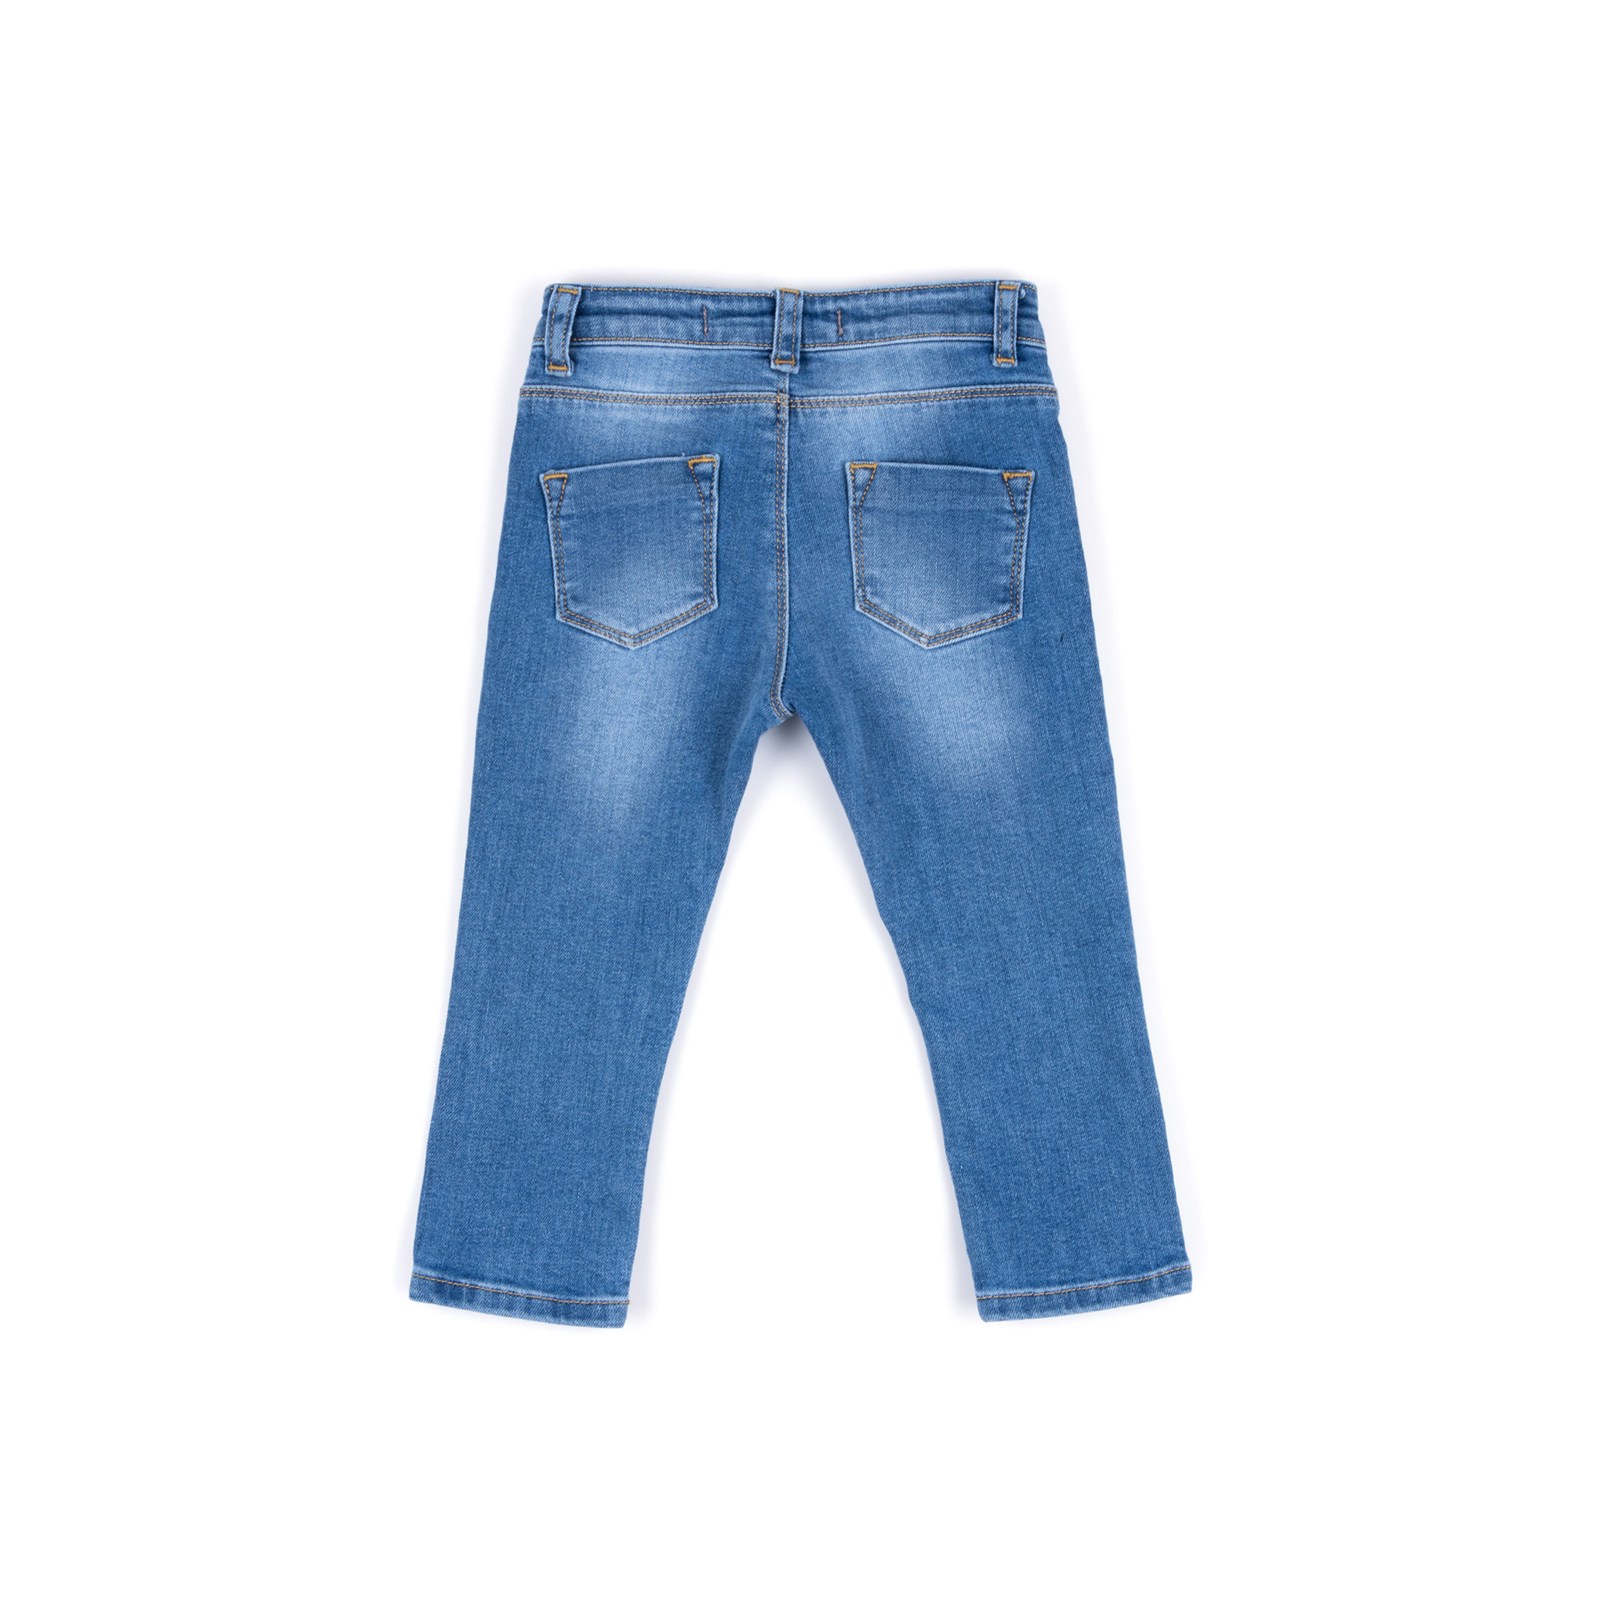 Джинсы Breeze джинсовые с цветочками (OZ-17703-80G-jeans) изображение 4